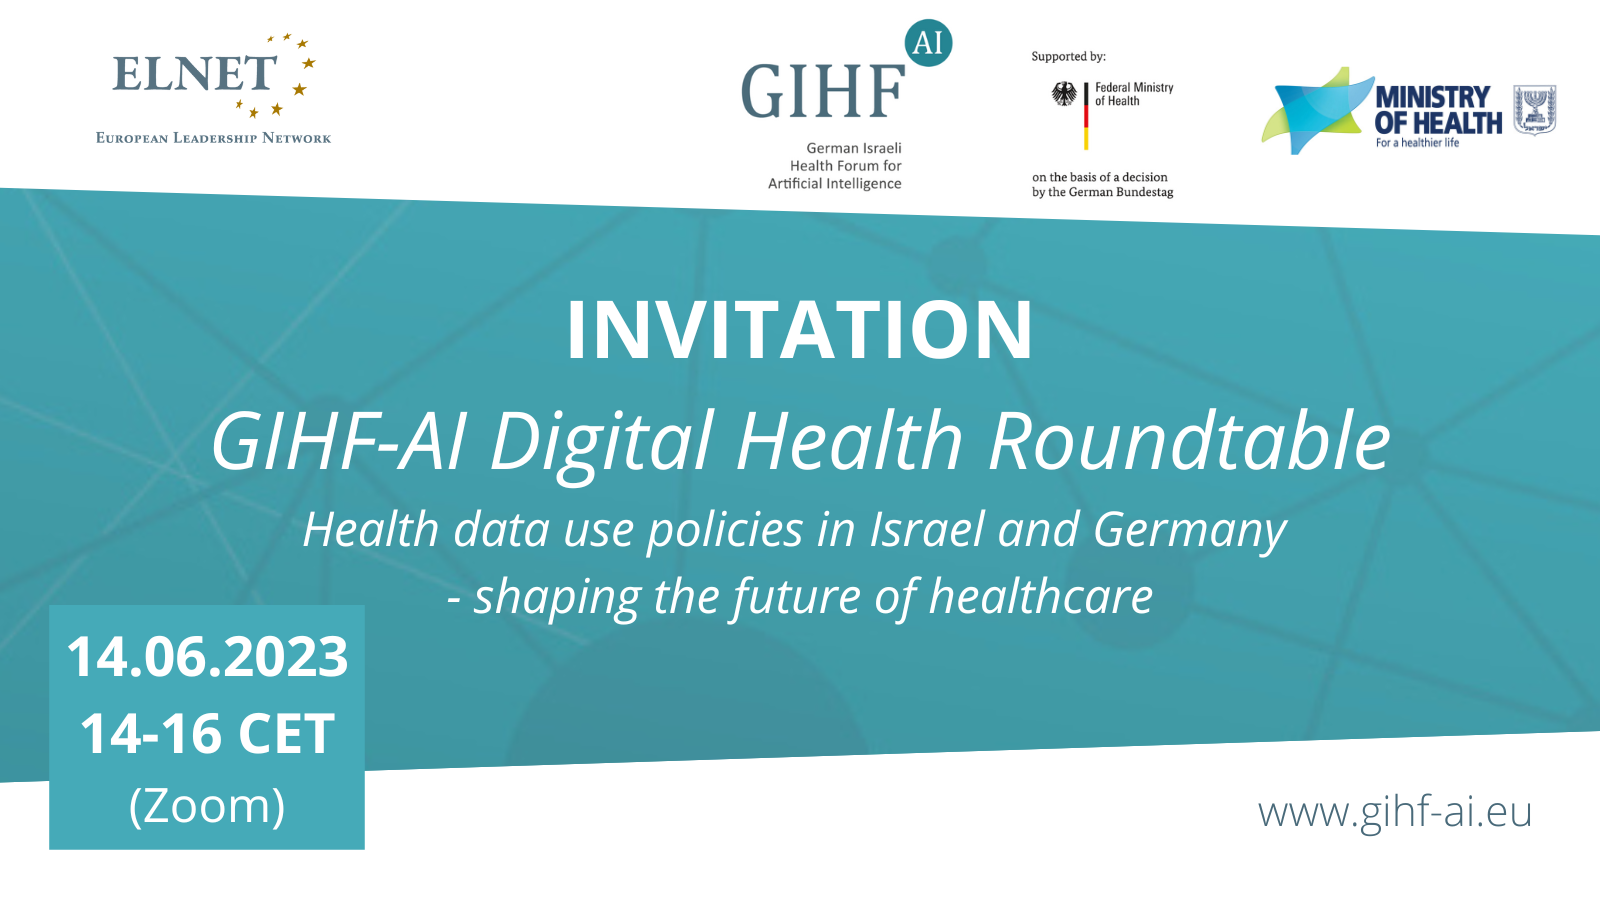 GIHF-AI Roundtable Regulation 2023